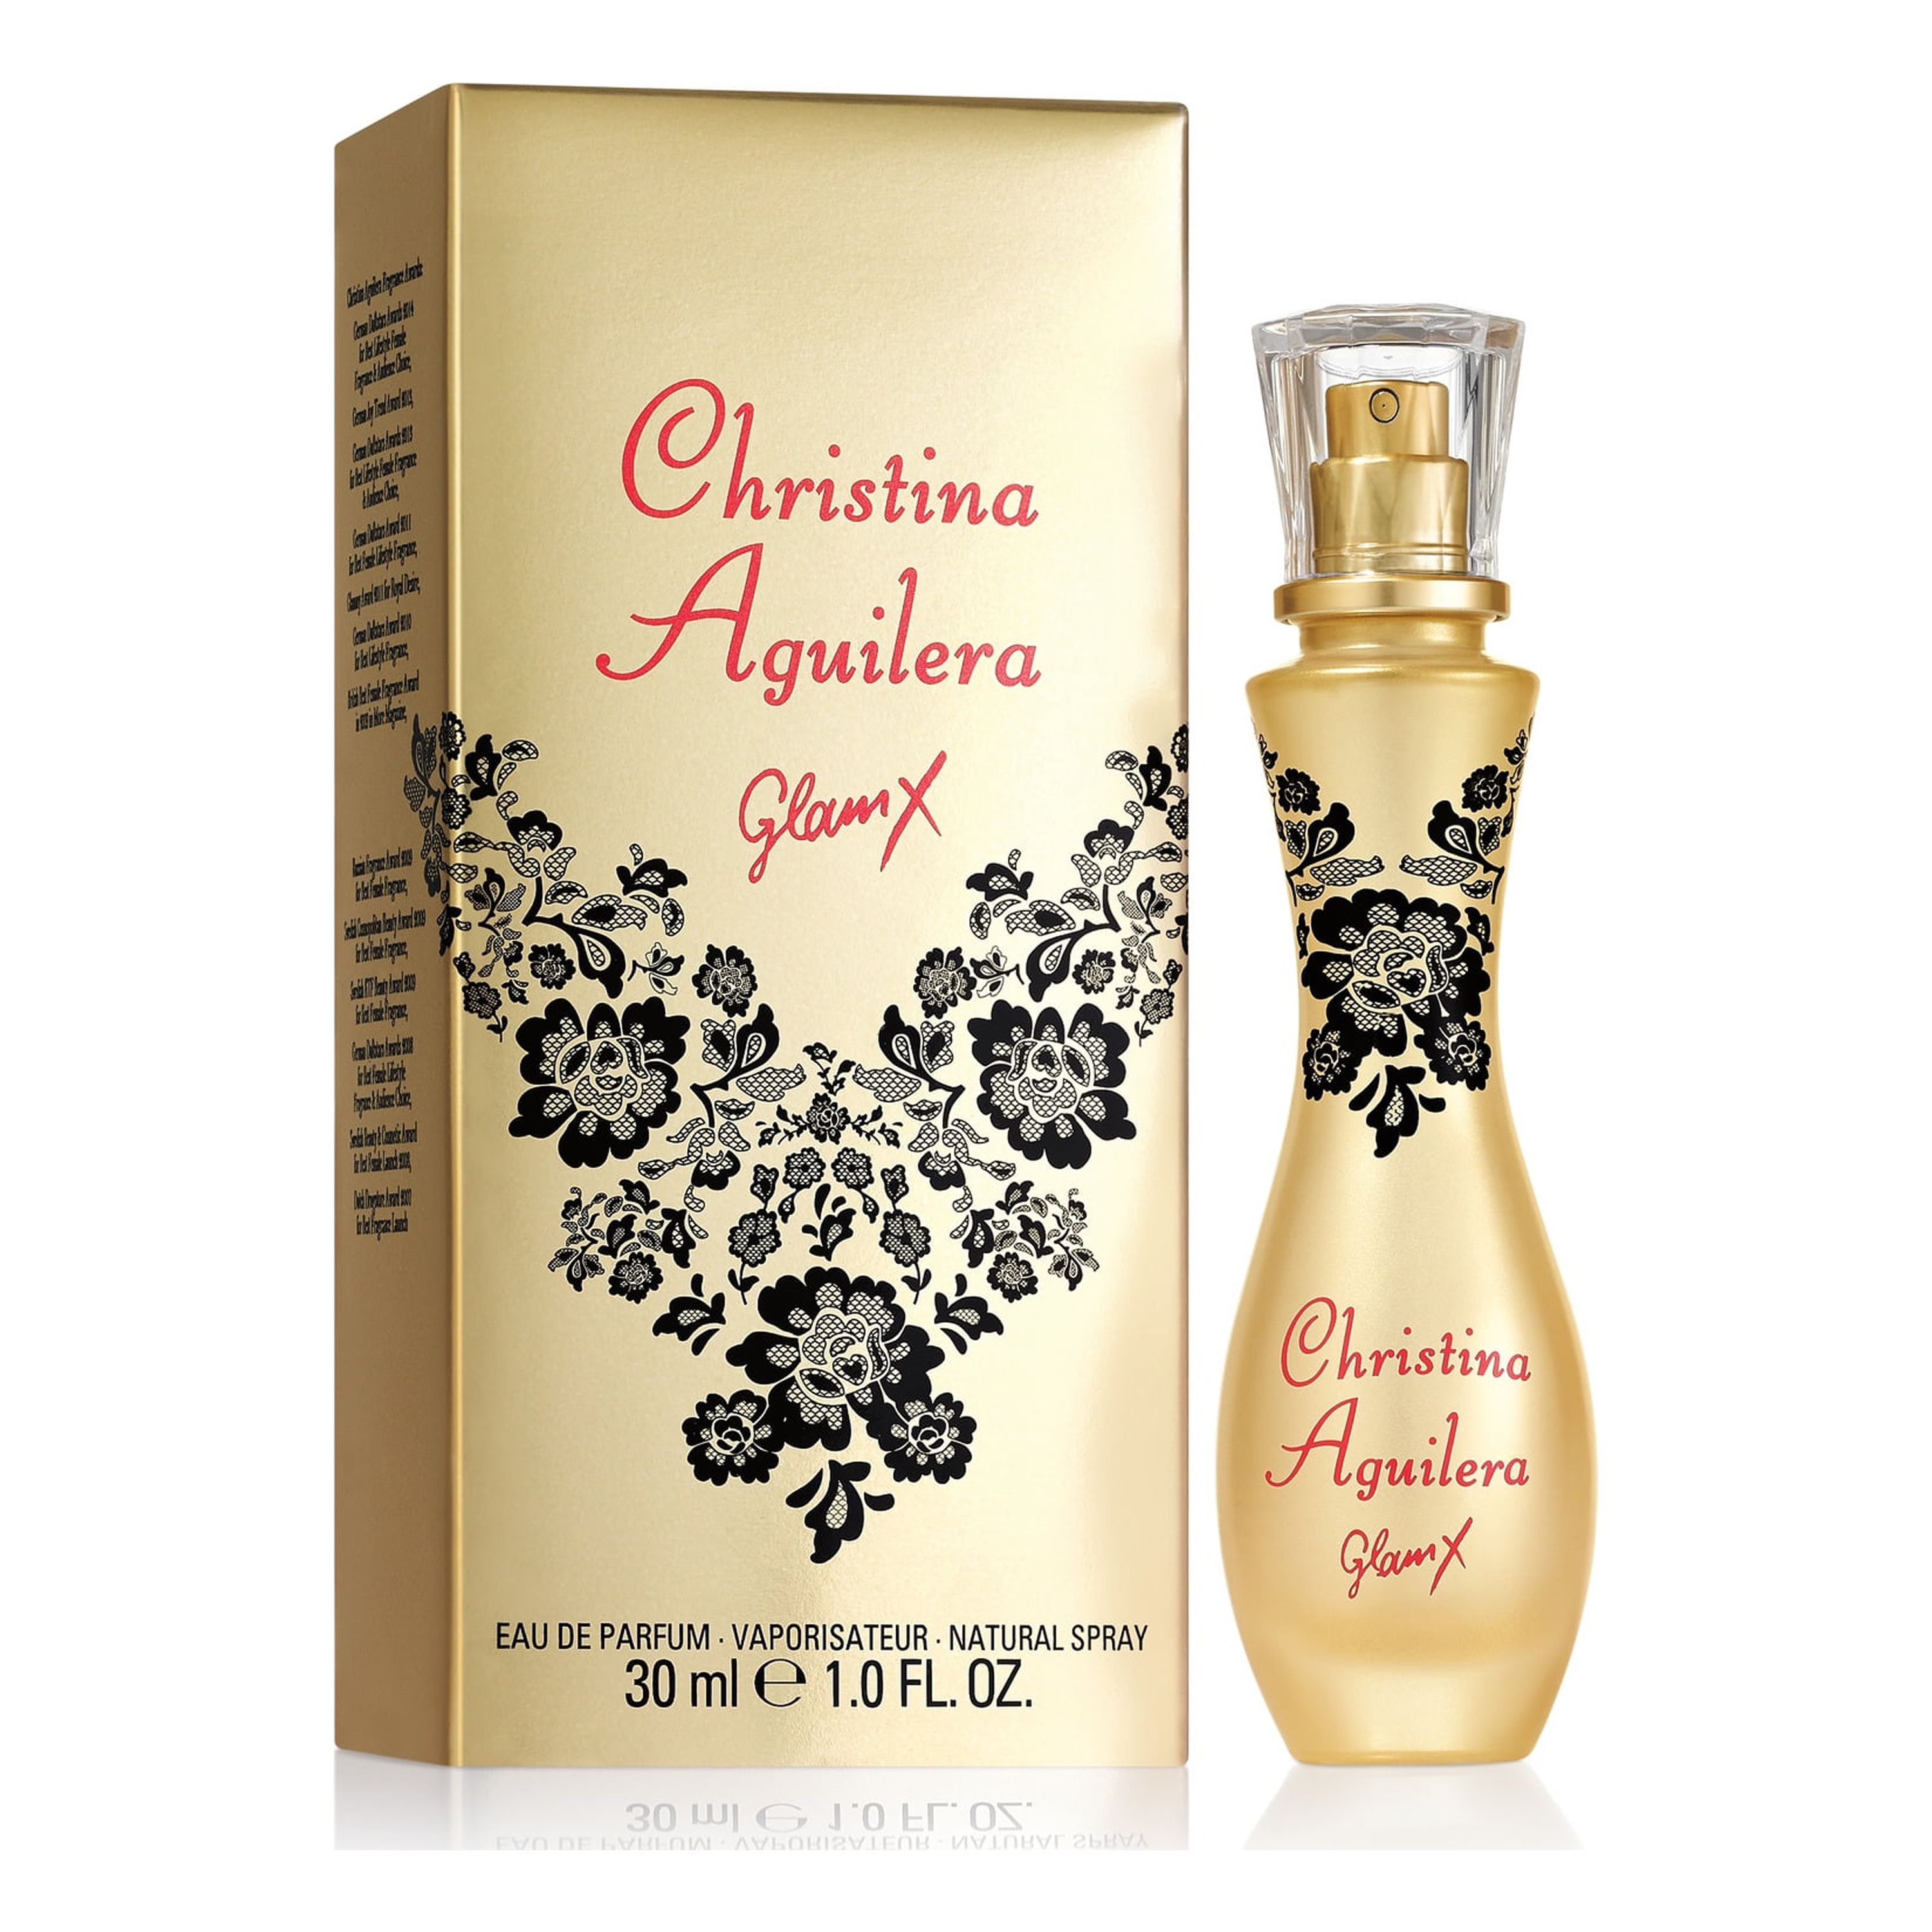 Christina Aguilera Glam X Eau de Parfum Fragrance Spray for Women, 1.0 fl oz - image 1 of 2